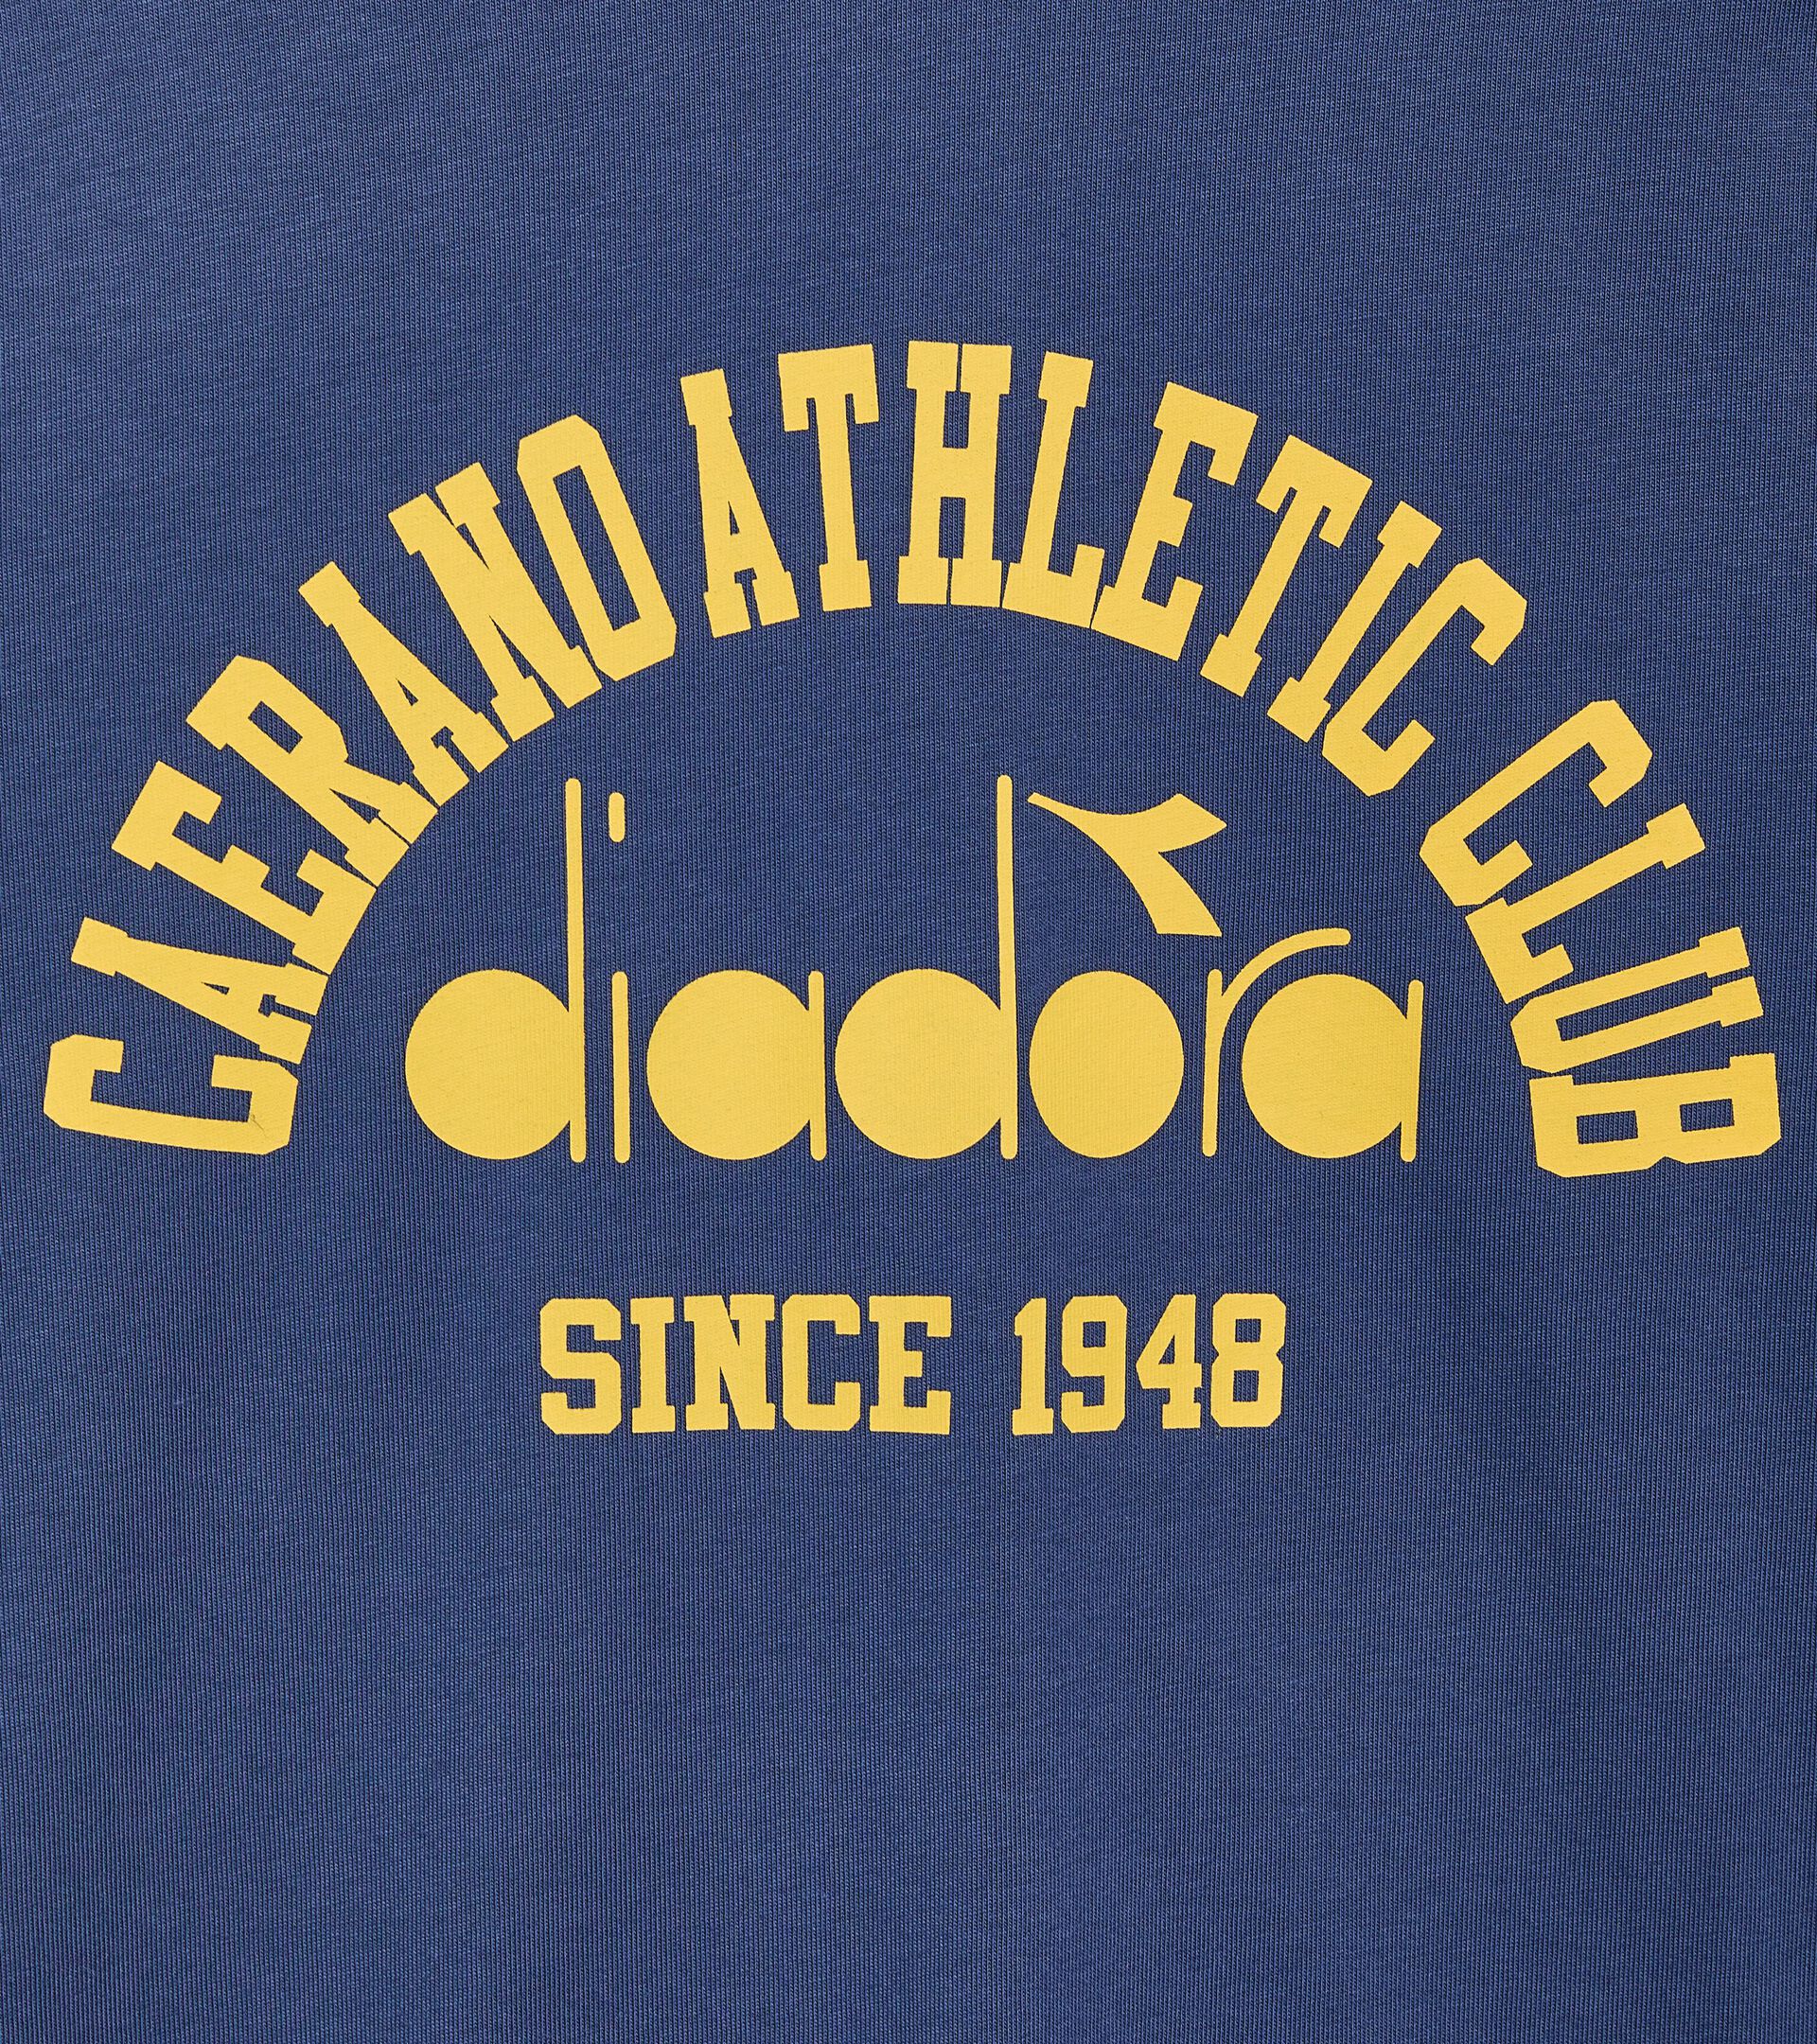 T-shirt - Gender Neutral T-SHIRT SS 1948 ATHL. CLUB OCEANA - Diadora